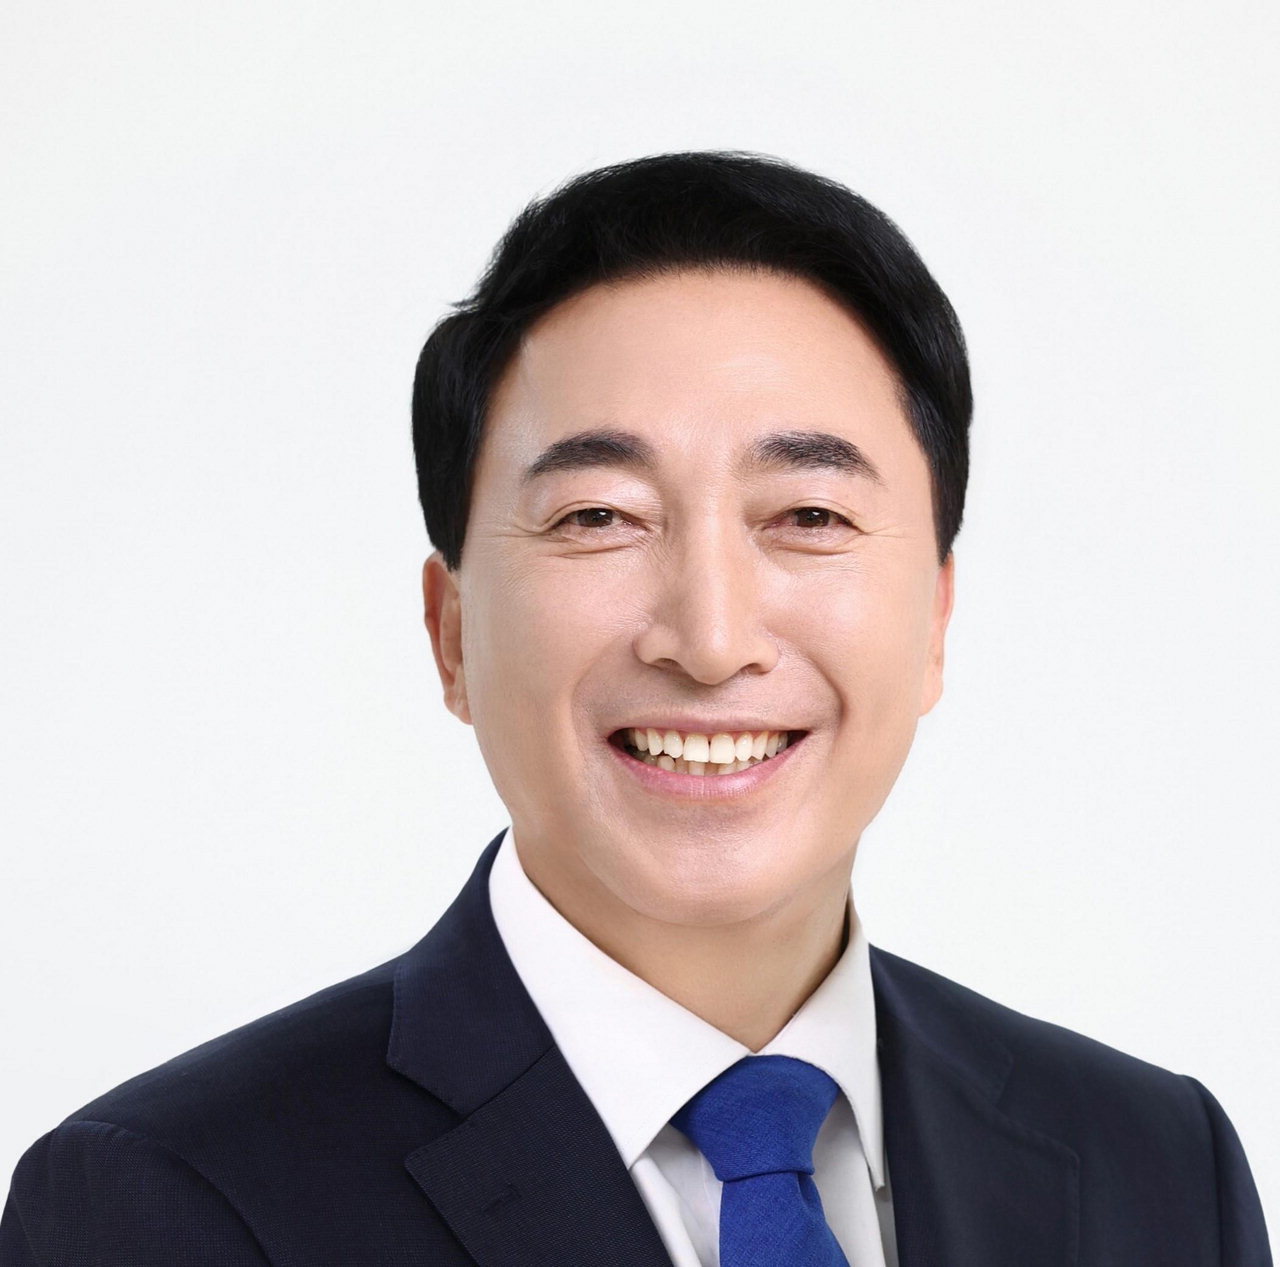 박수현 국회의원 후보